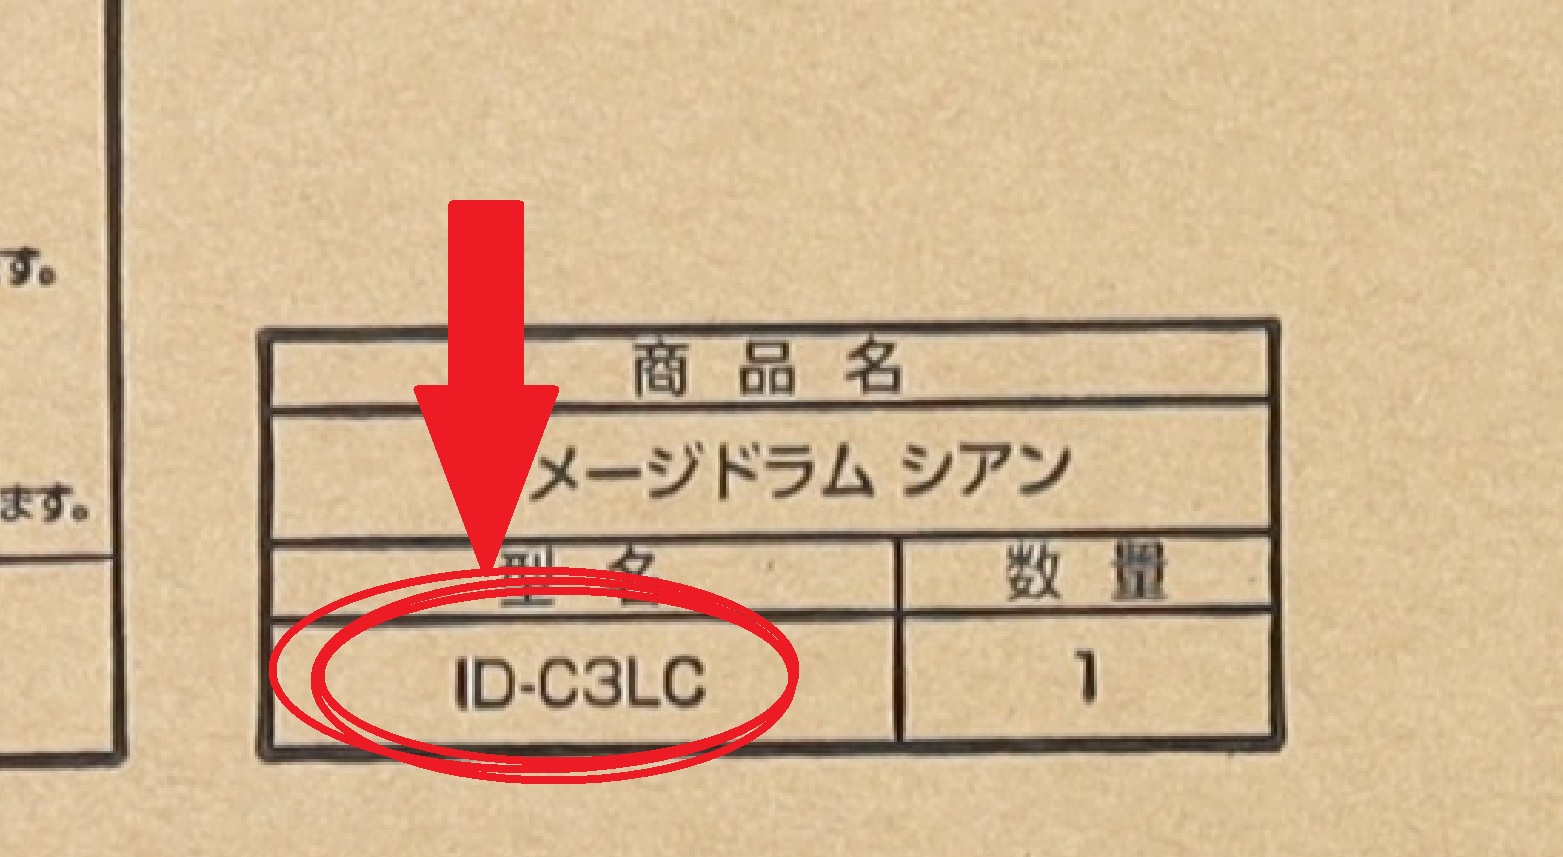 OKI イメージドラム ID-C3LC 型番